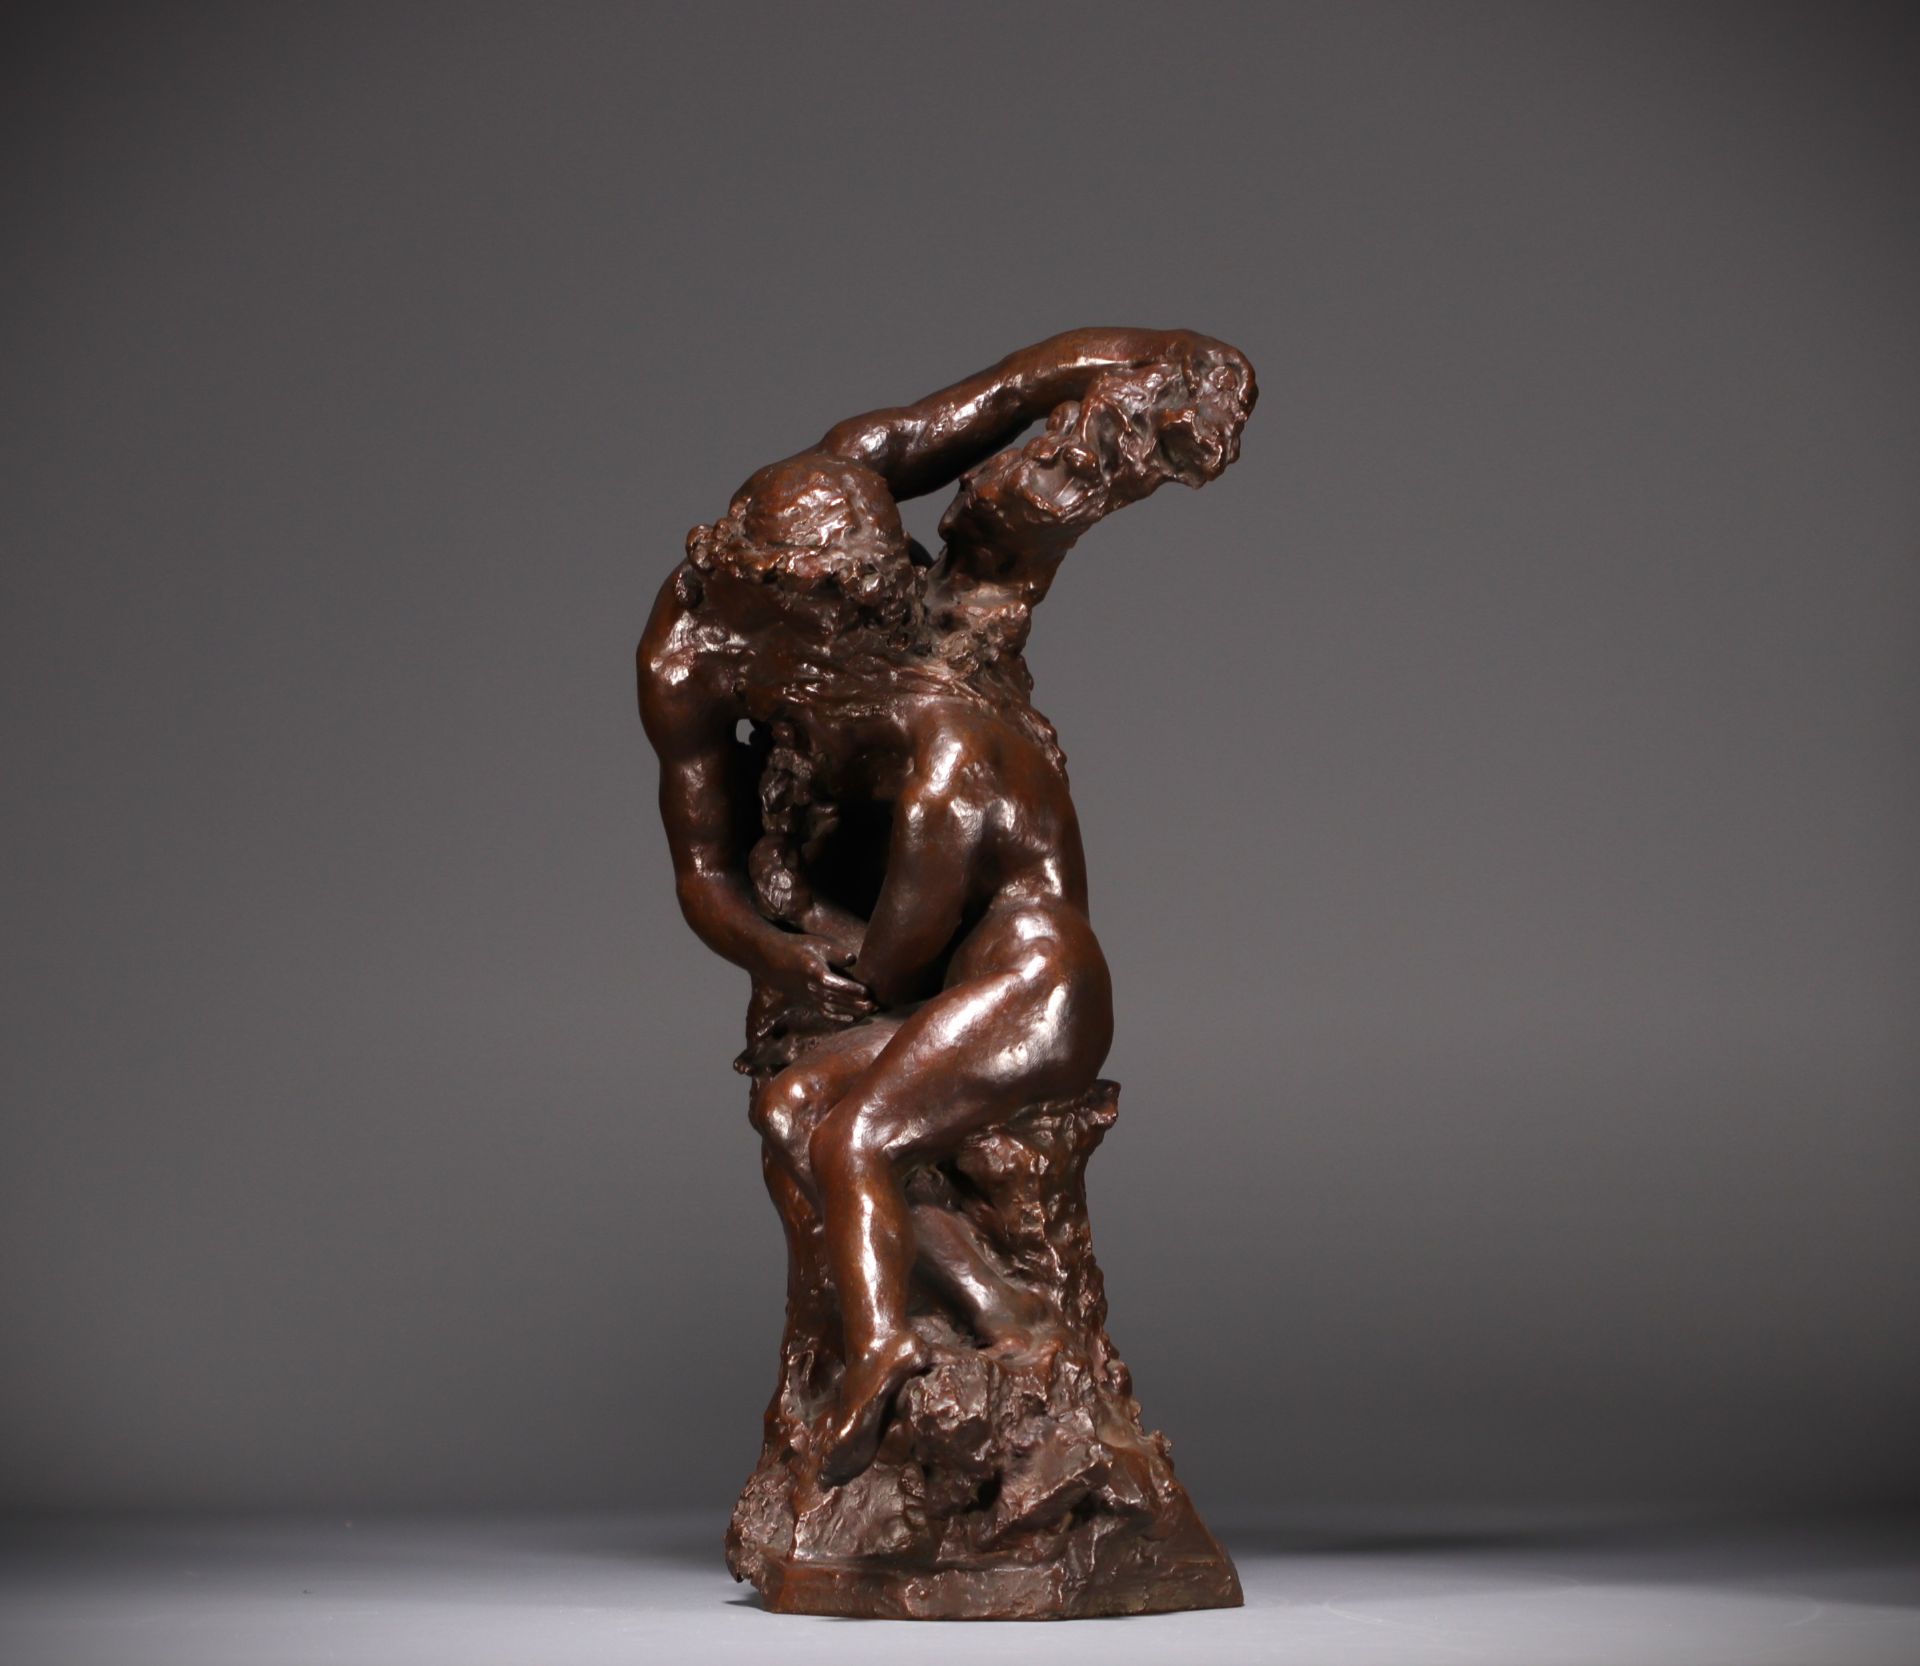 Jules DESBOIS (1851-1935) "L'Amour" Lost wax bronze, signed J. Desbois, nÂ°1, Stamp Hebrard foundry. - Image 4 of 7